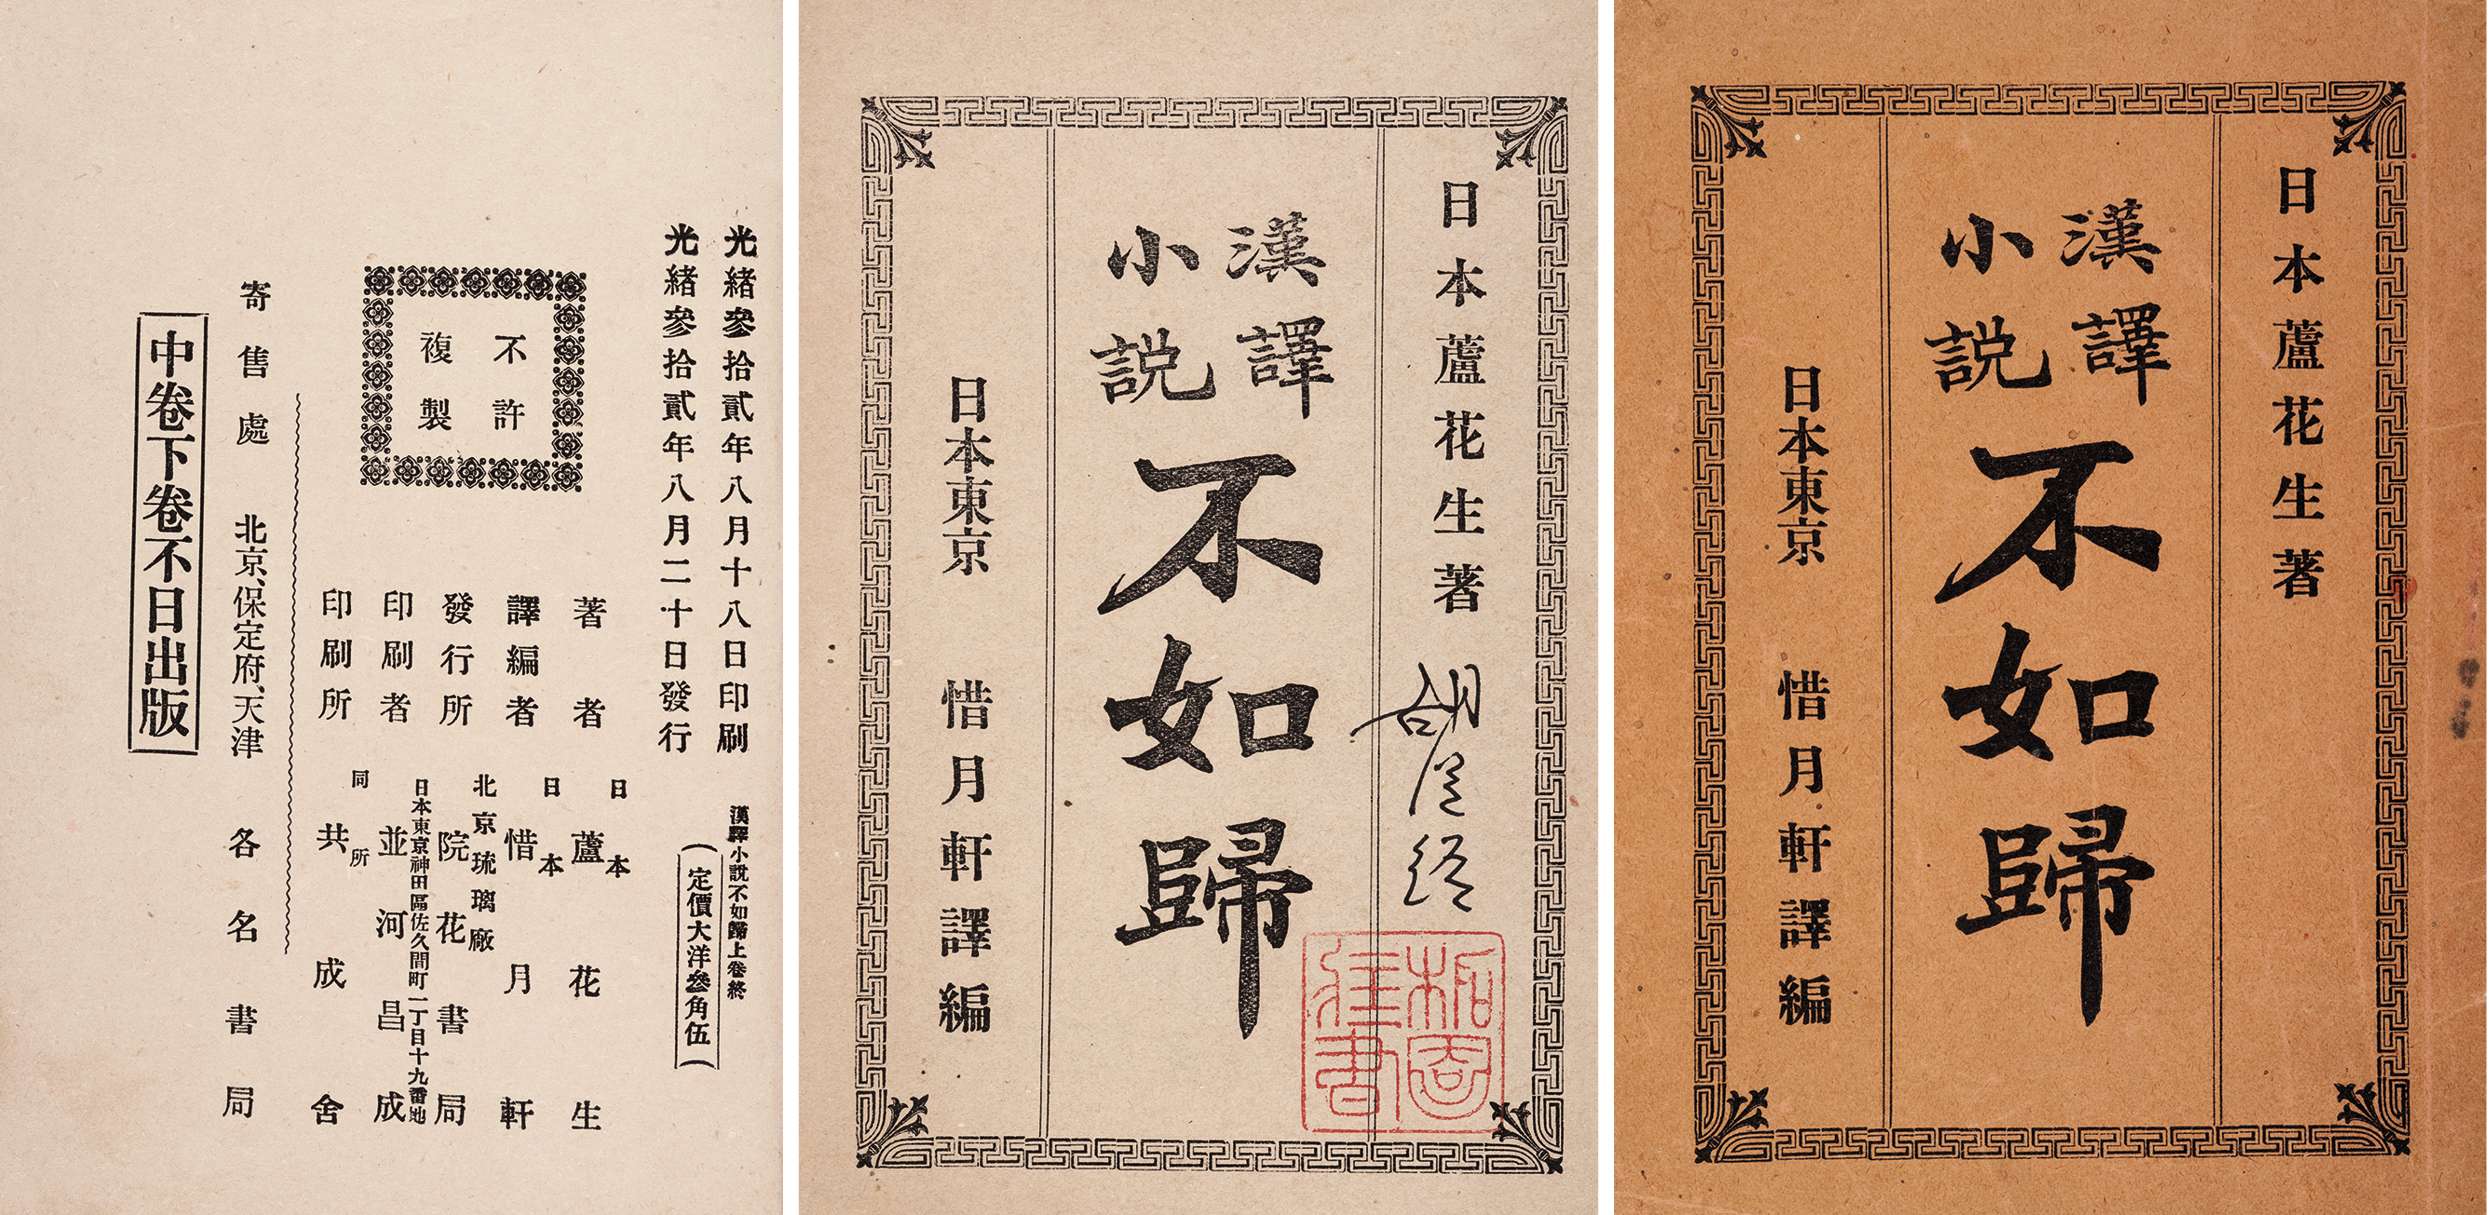 不如归 清光绪三十二年（1906）北京浣花书局刊行